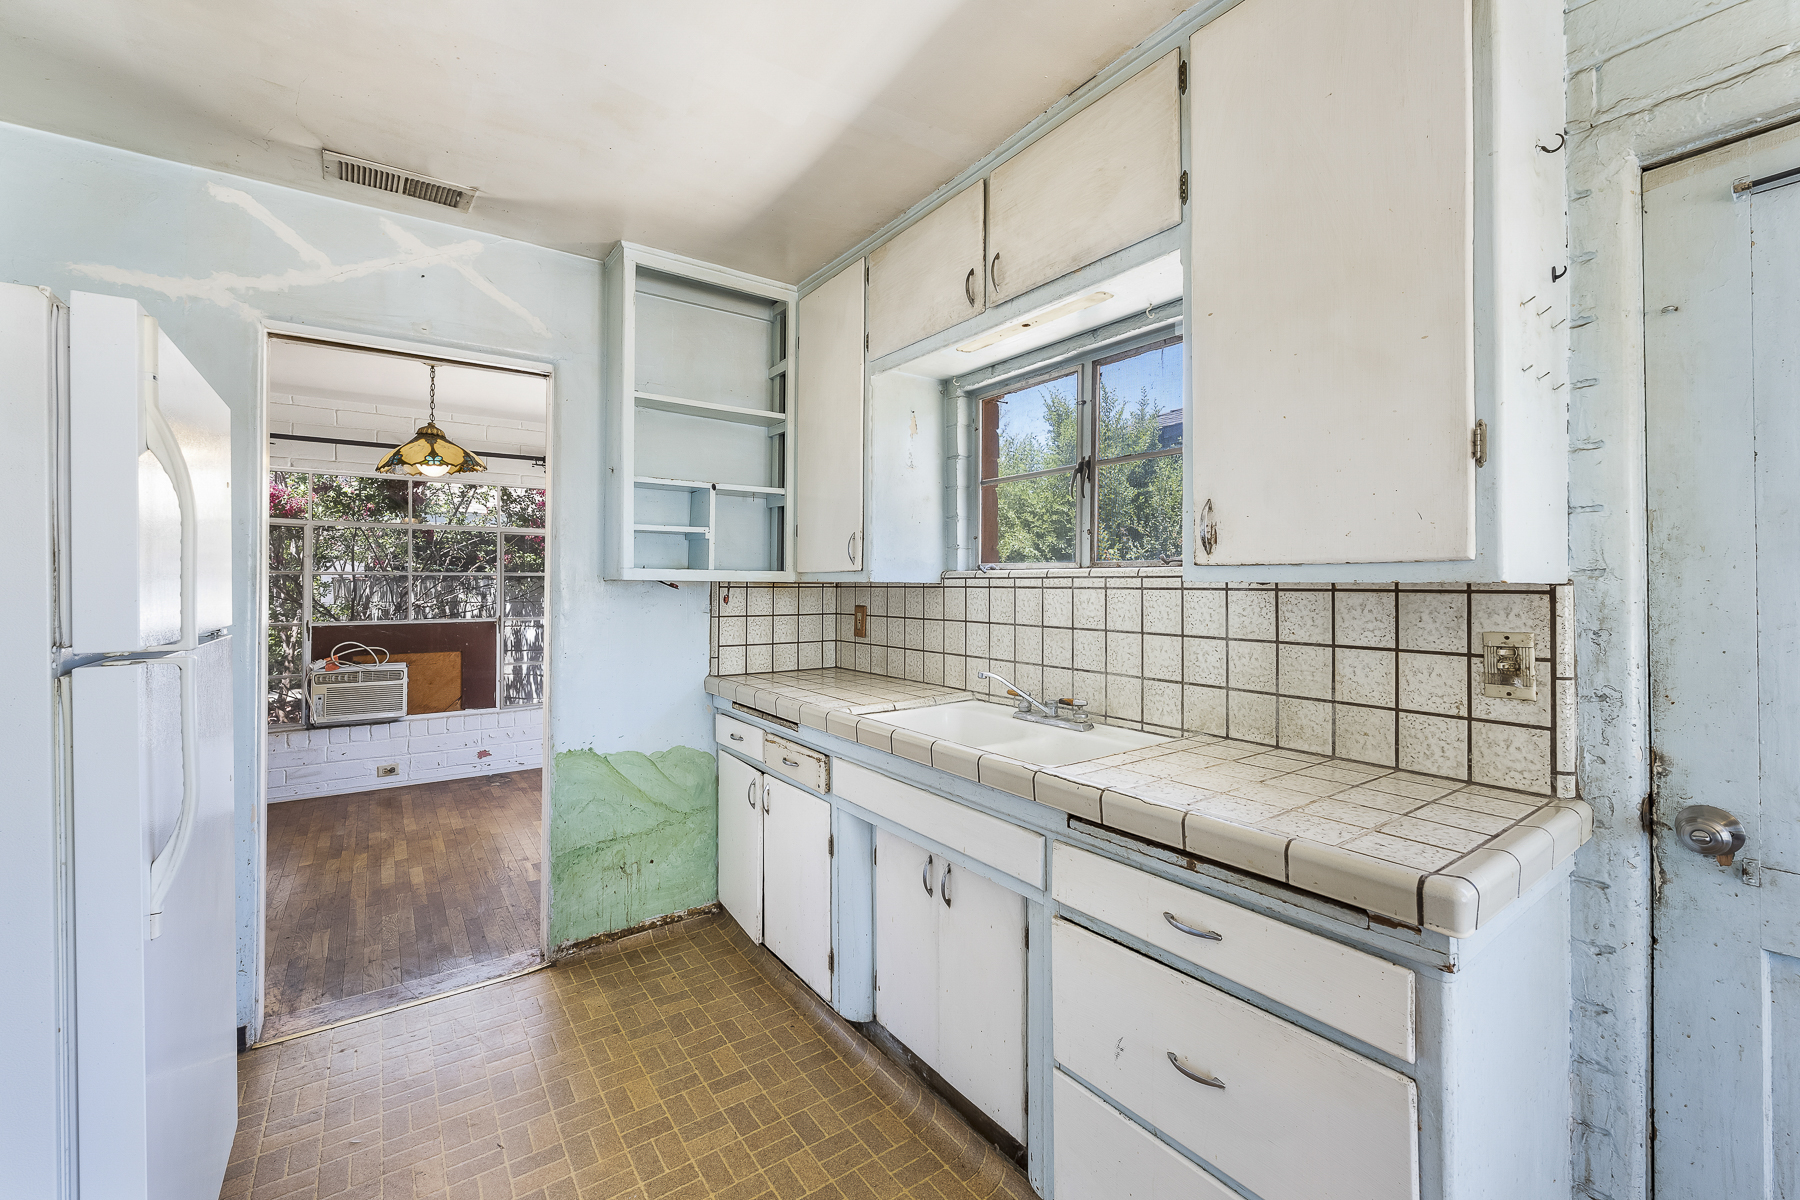 319 E. Francis Ave, La Habra, CA 90631: Interior kitchen sink and counter shot.